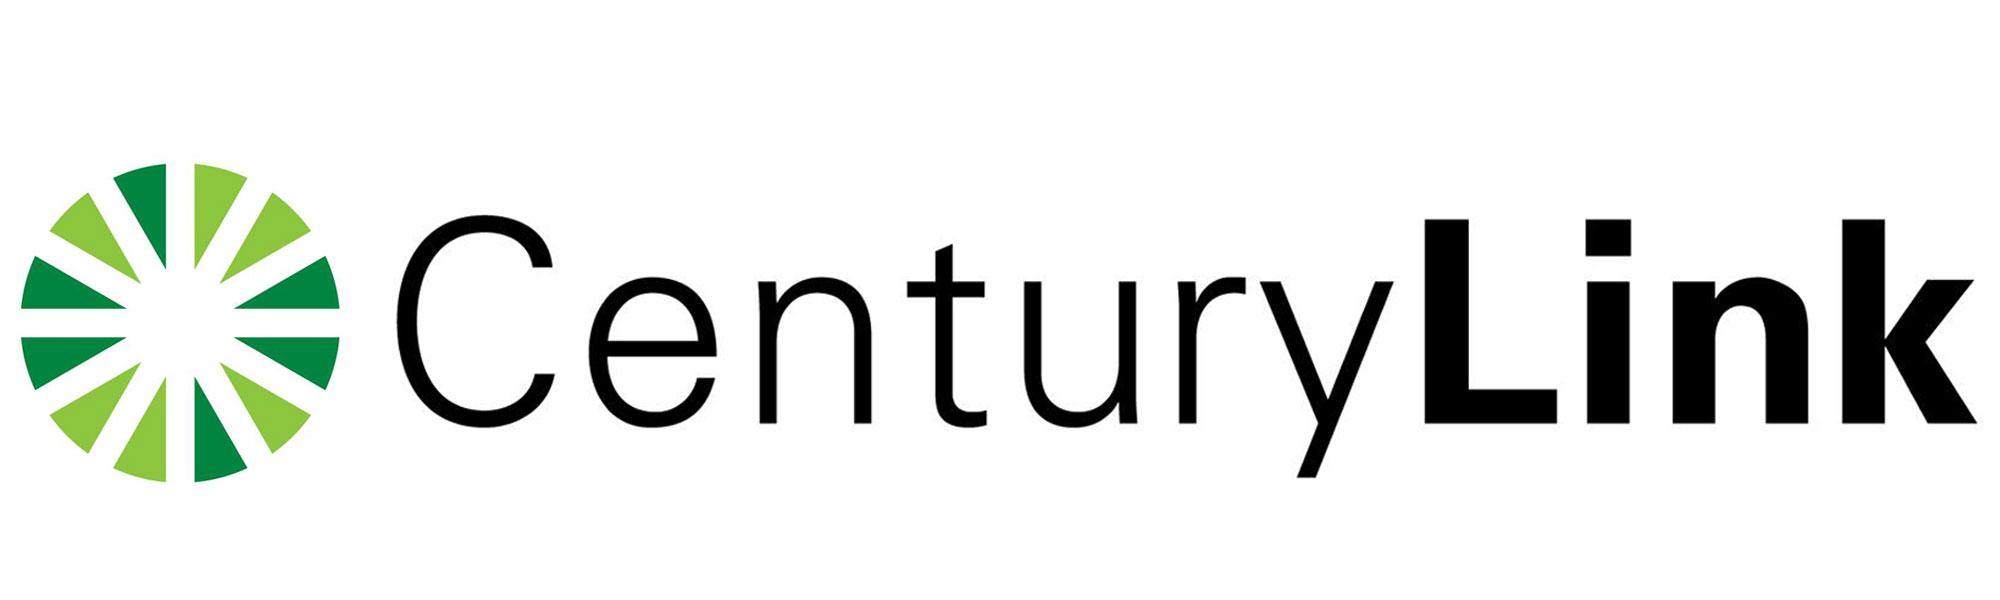 Image result for centurylink